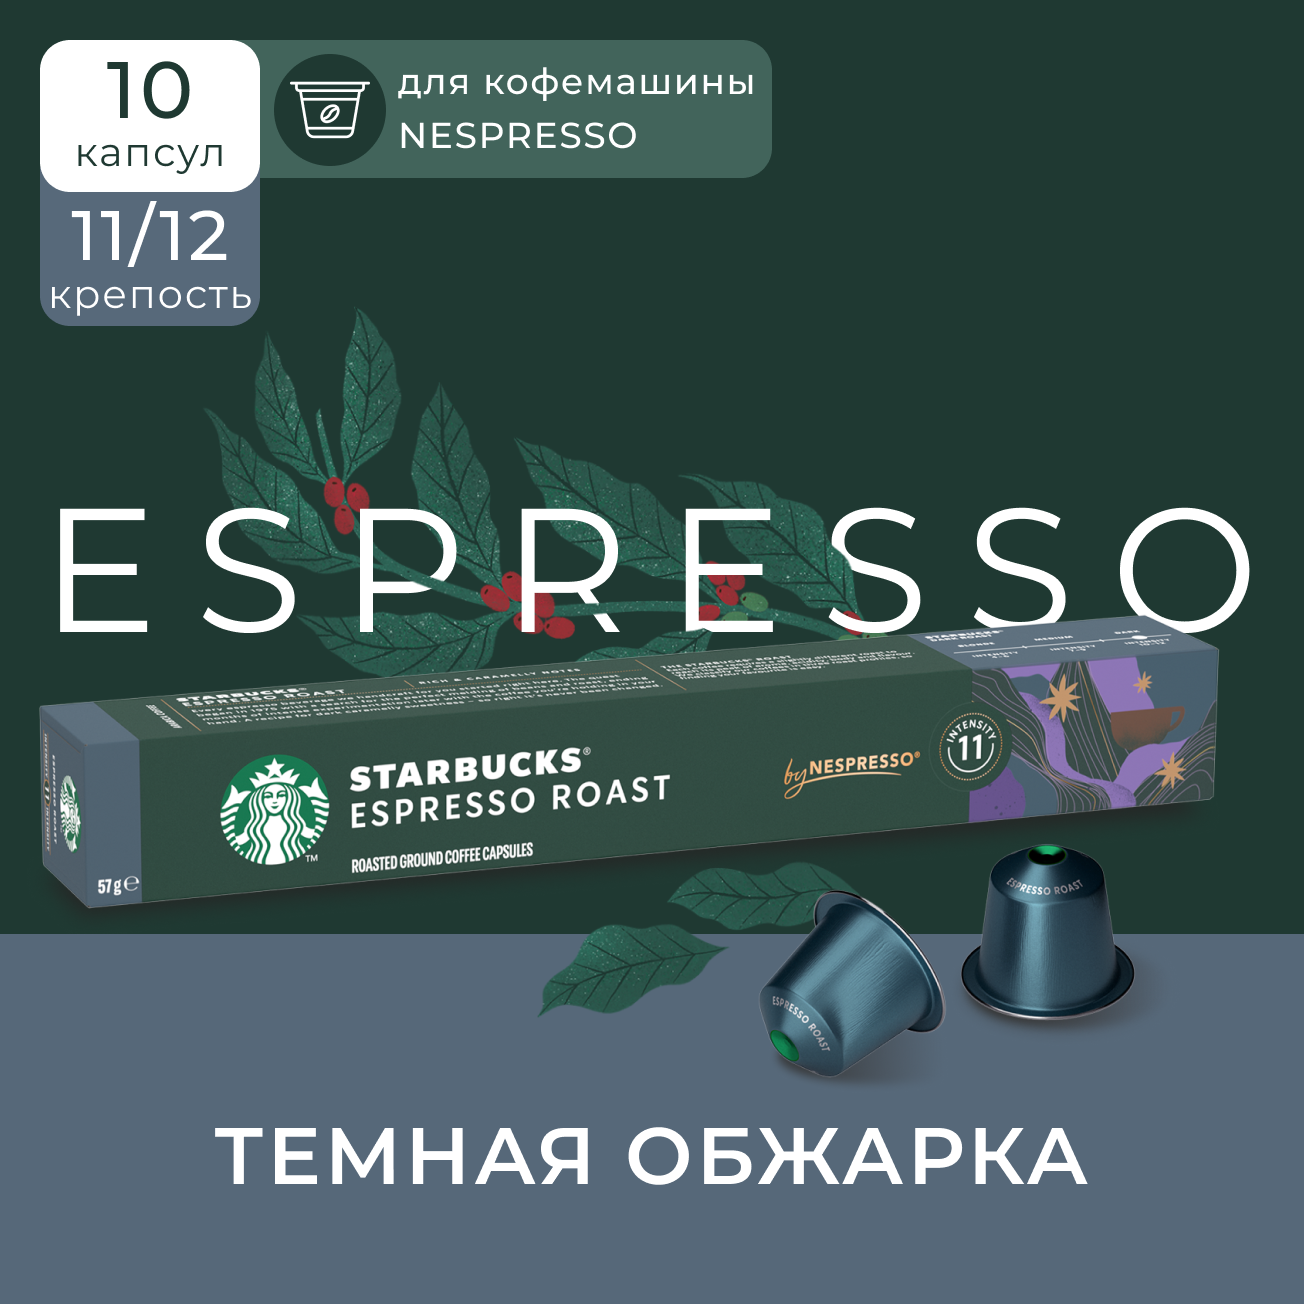 Кофе в капсулах Starbucks Nespresso Capsules Espresso, Старбакс в капсулах для кофемашины Неспрессо, эспрессо, 10 штук